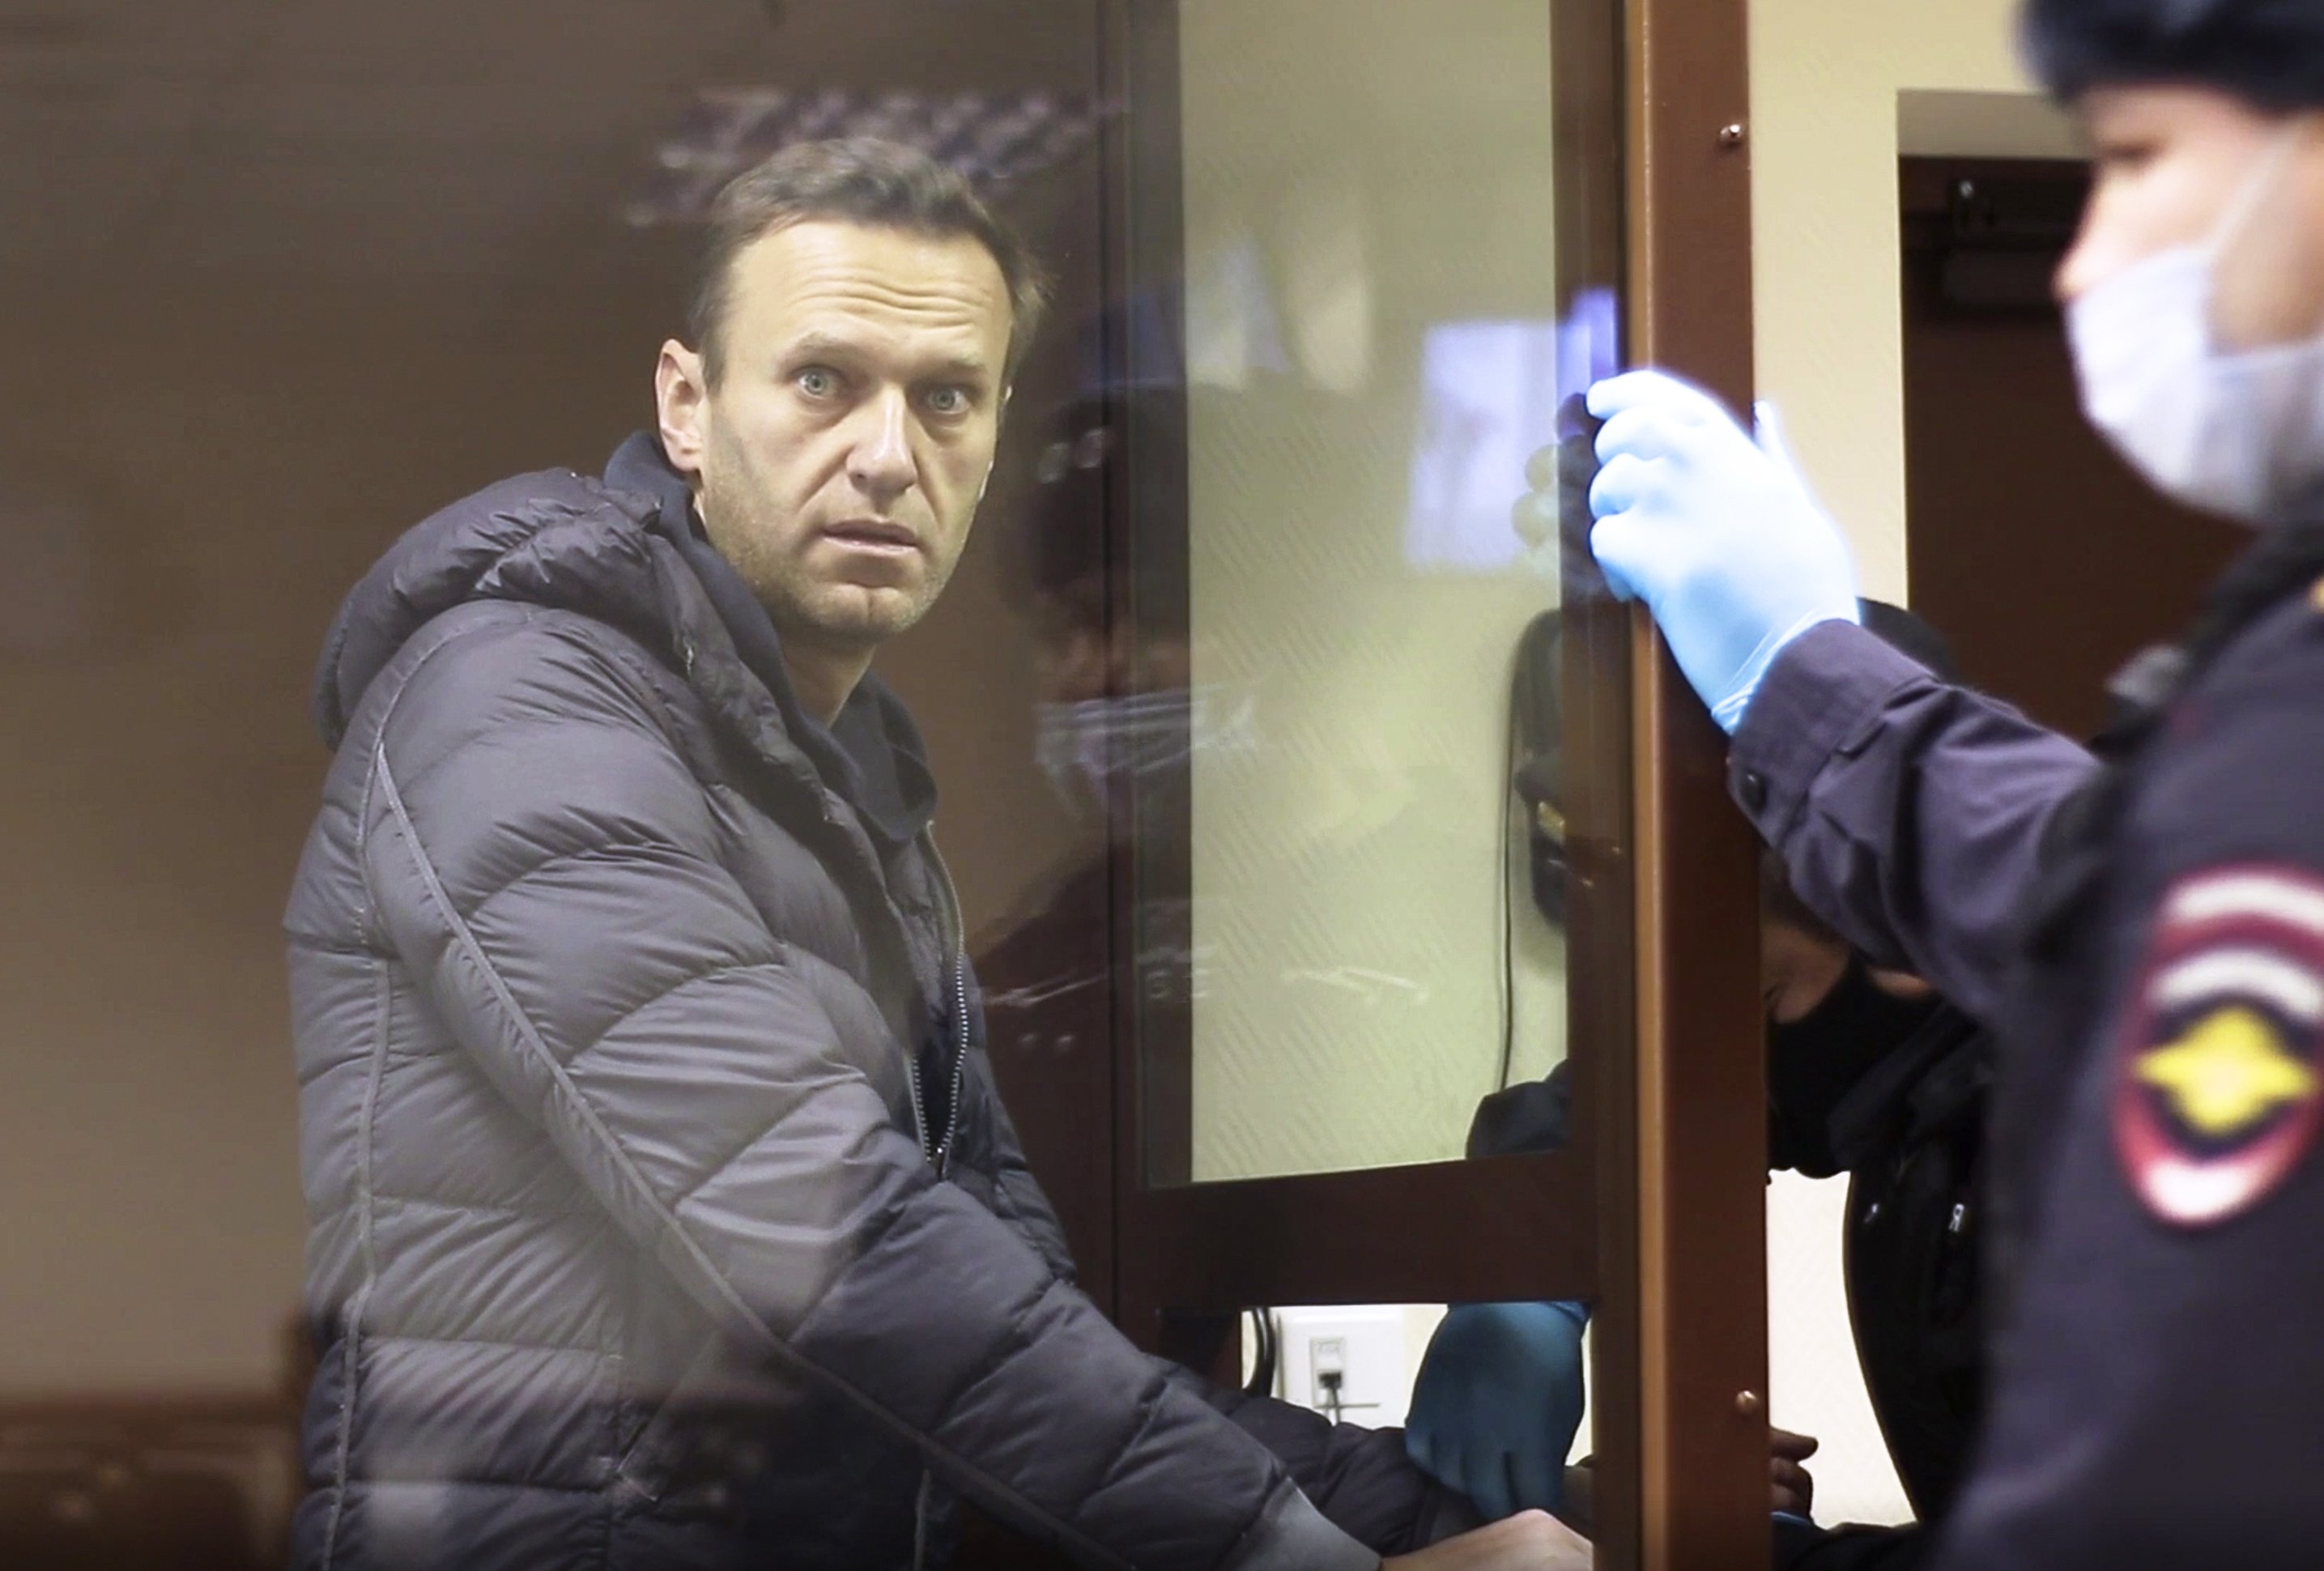 La Russie expulse des diplomates de l’UE pour Navalny alors que les tensions augmentent